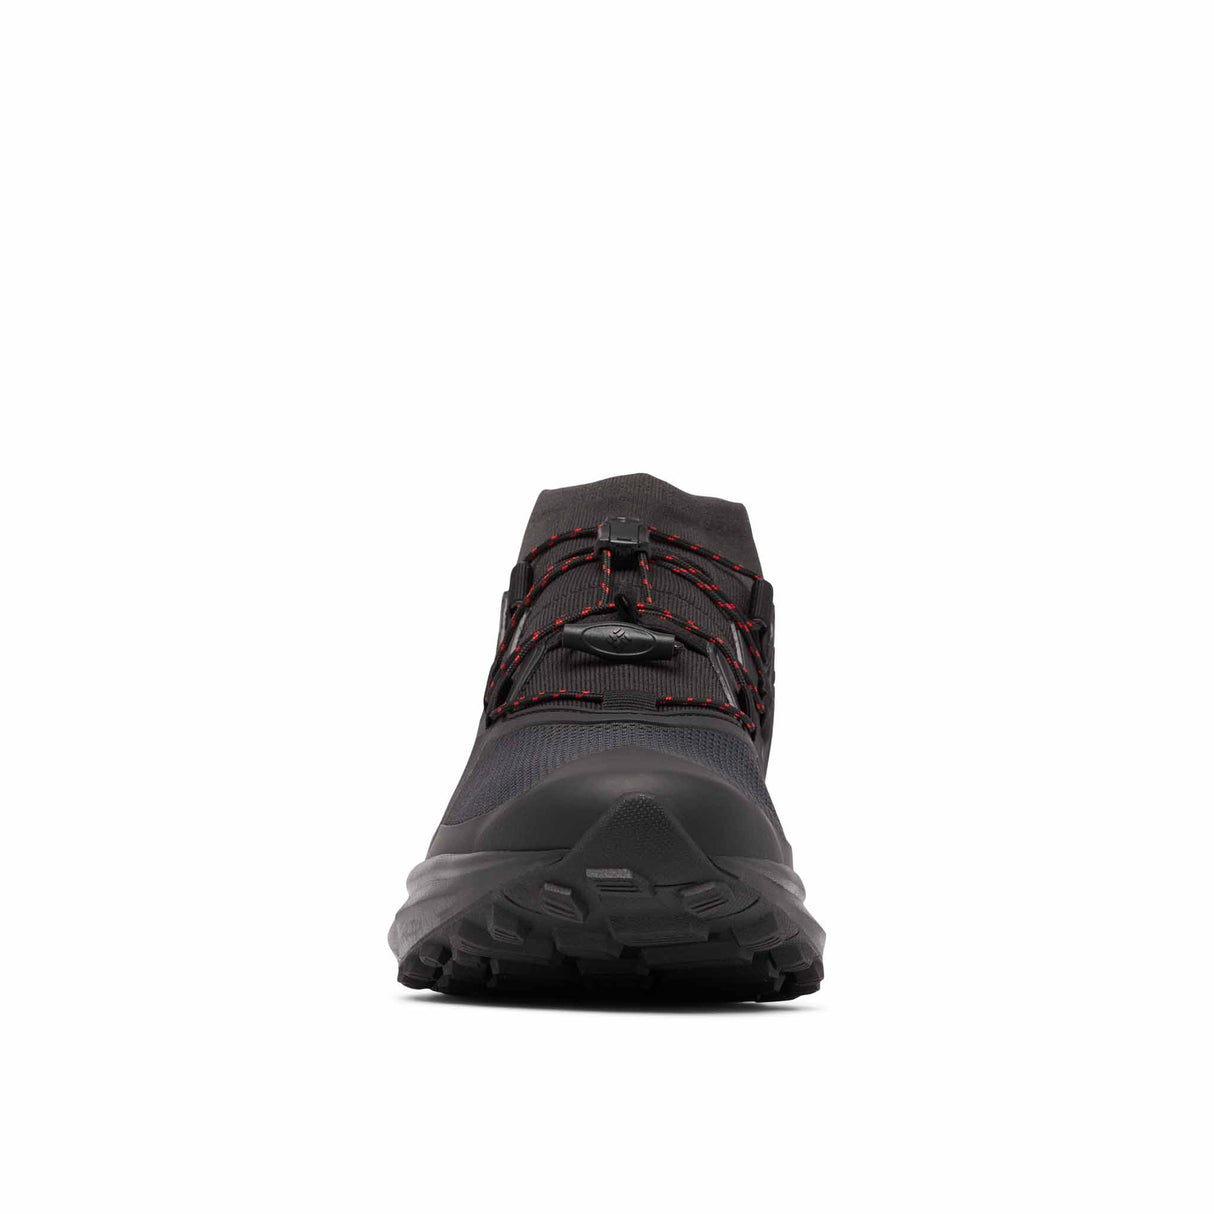 Columbia Facet 75 Alpha Outdry Chaussures de randonnée pour homme - Black / Cloud Grey